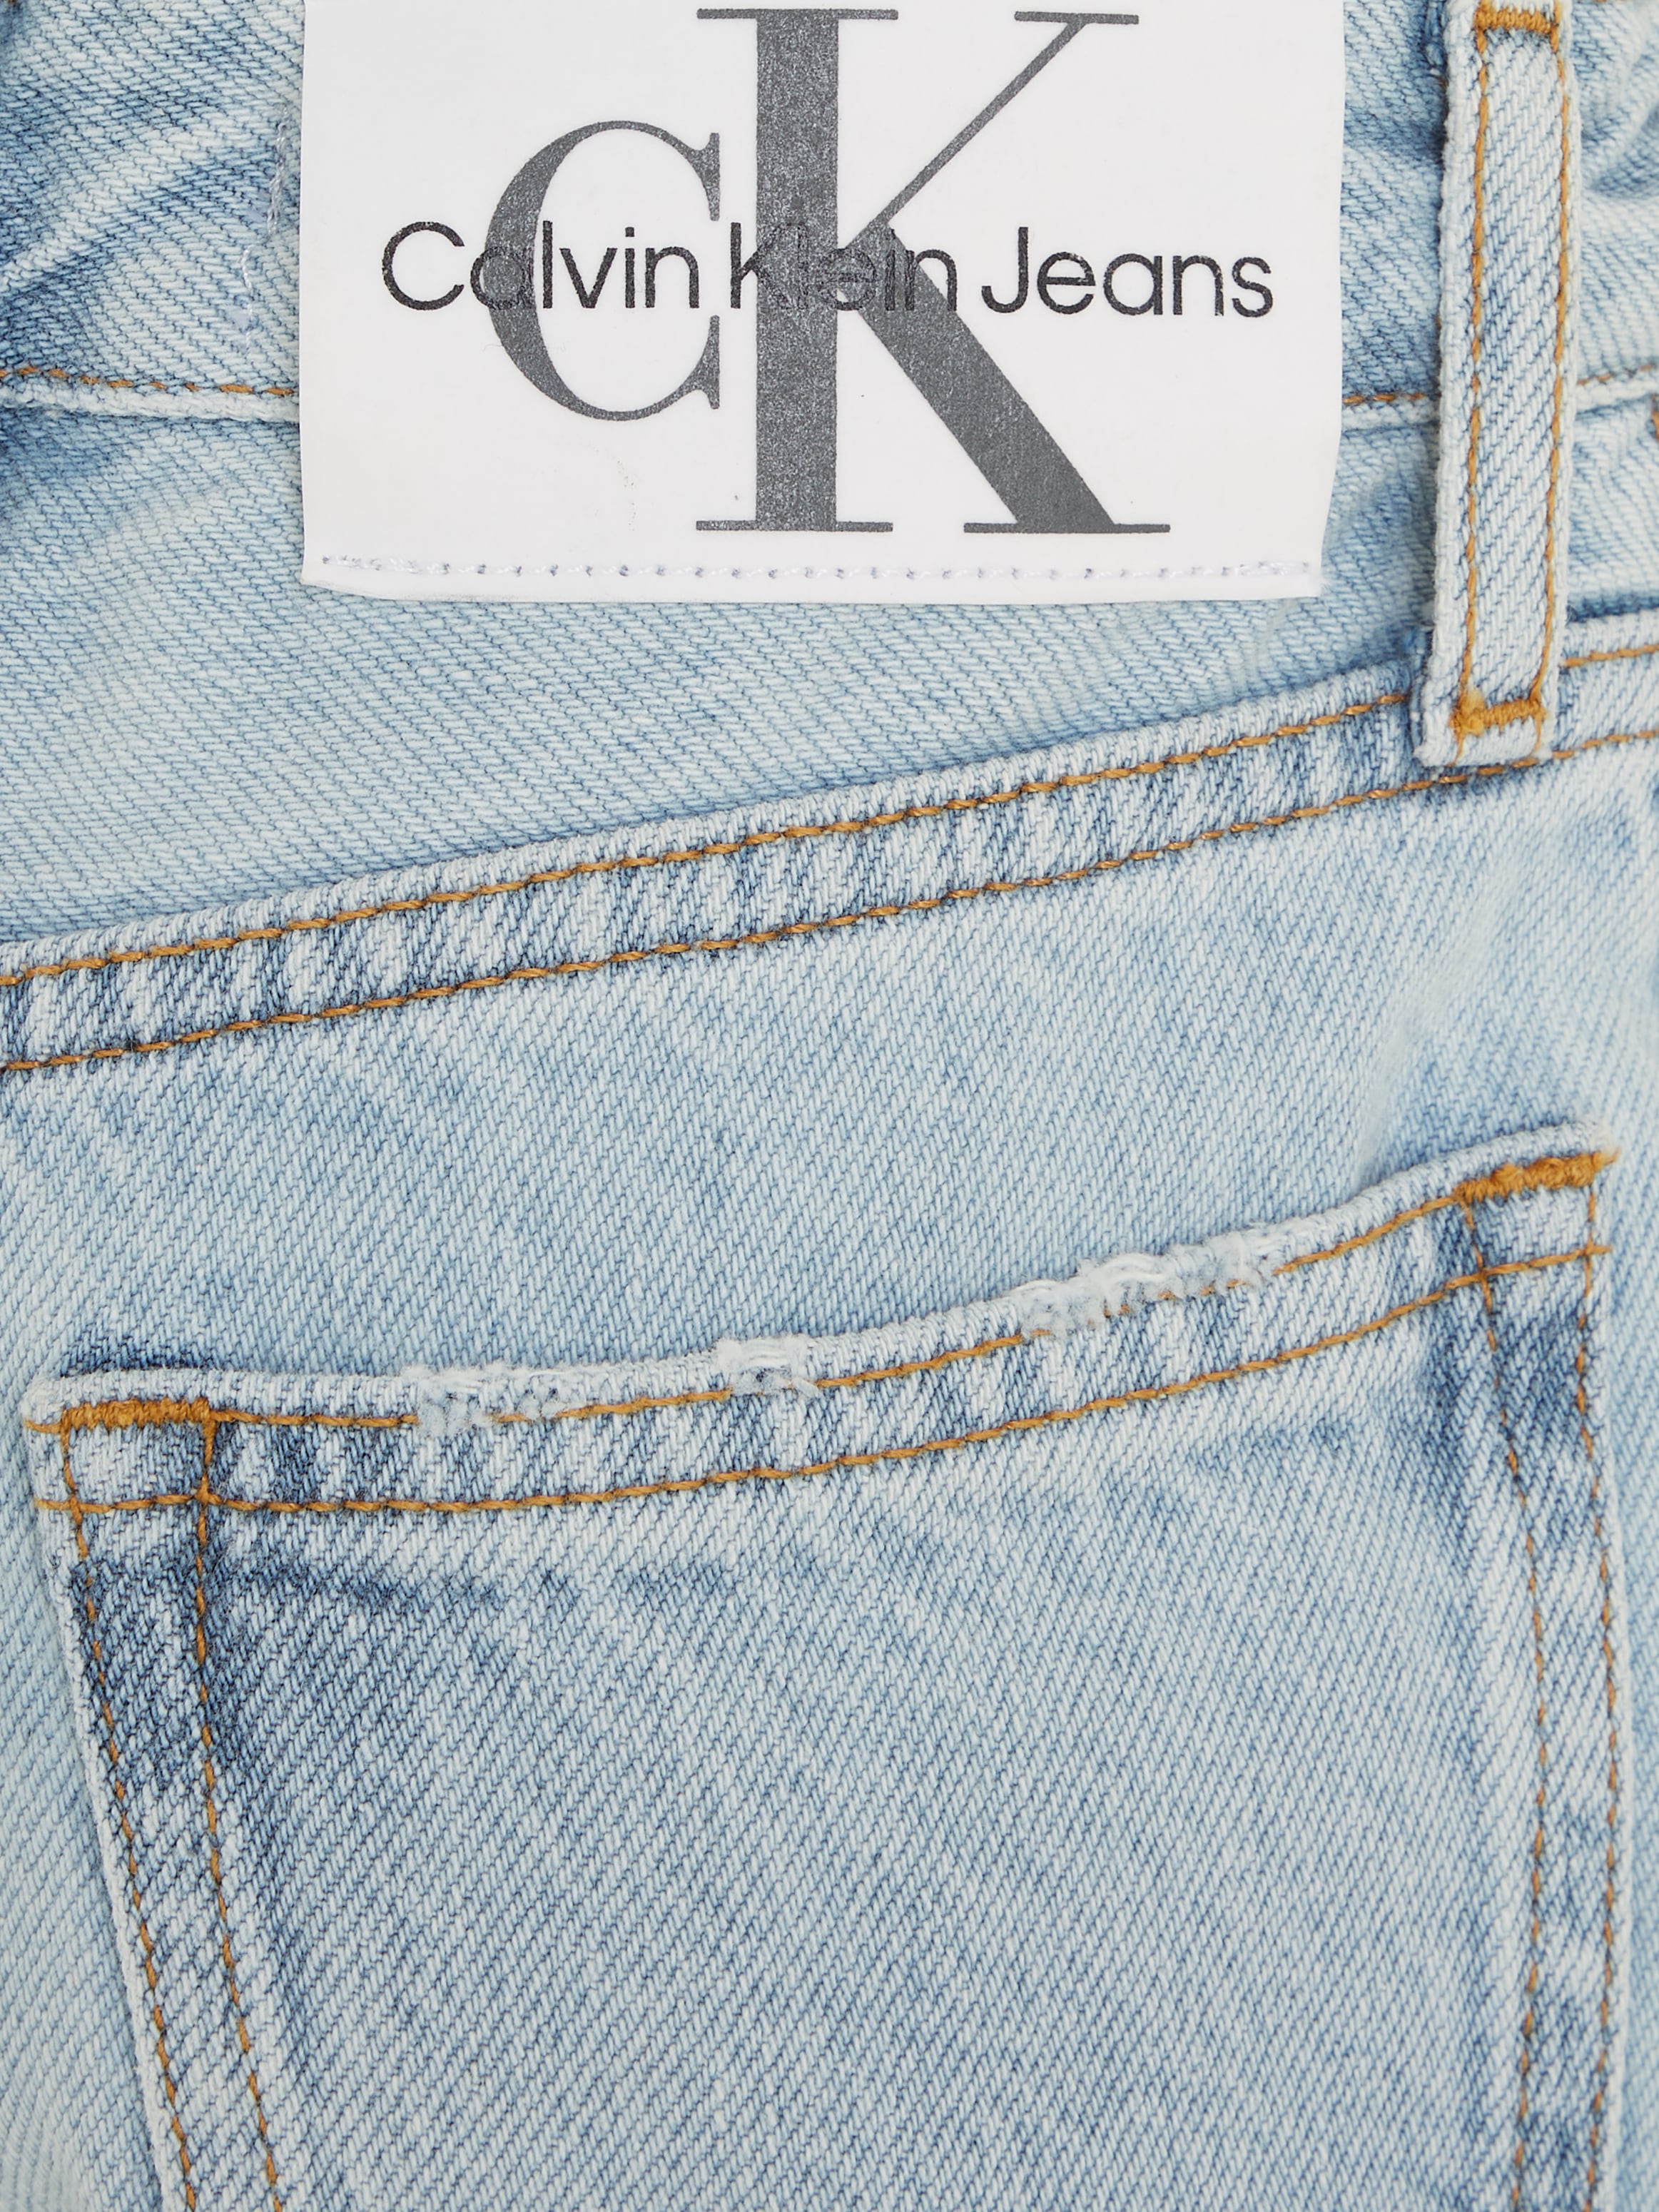 Calvin Klein Jeans Shorts »BARREL POWDER BLUE DENIM SHORTS«, Kinder bis 16 Jahre